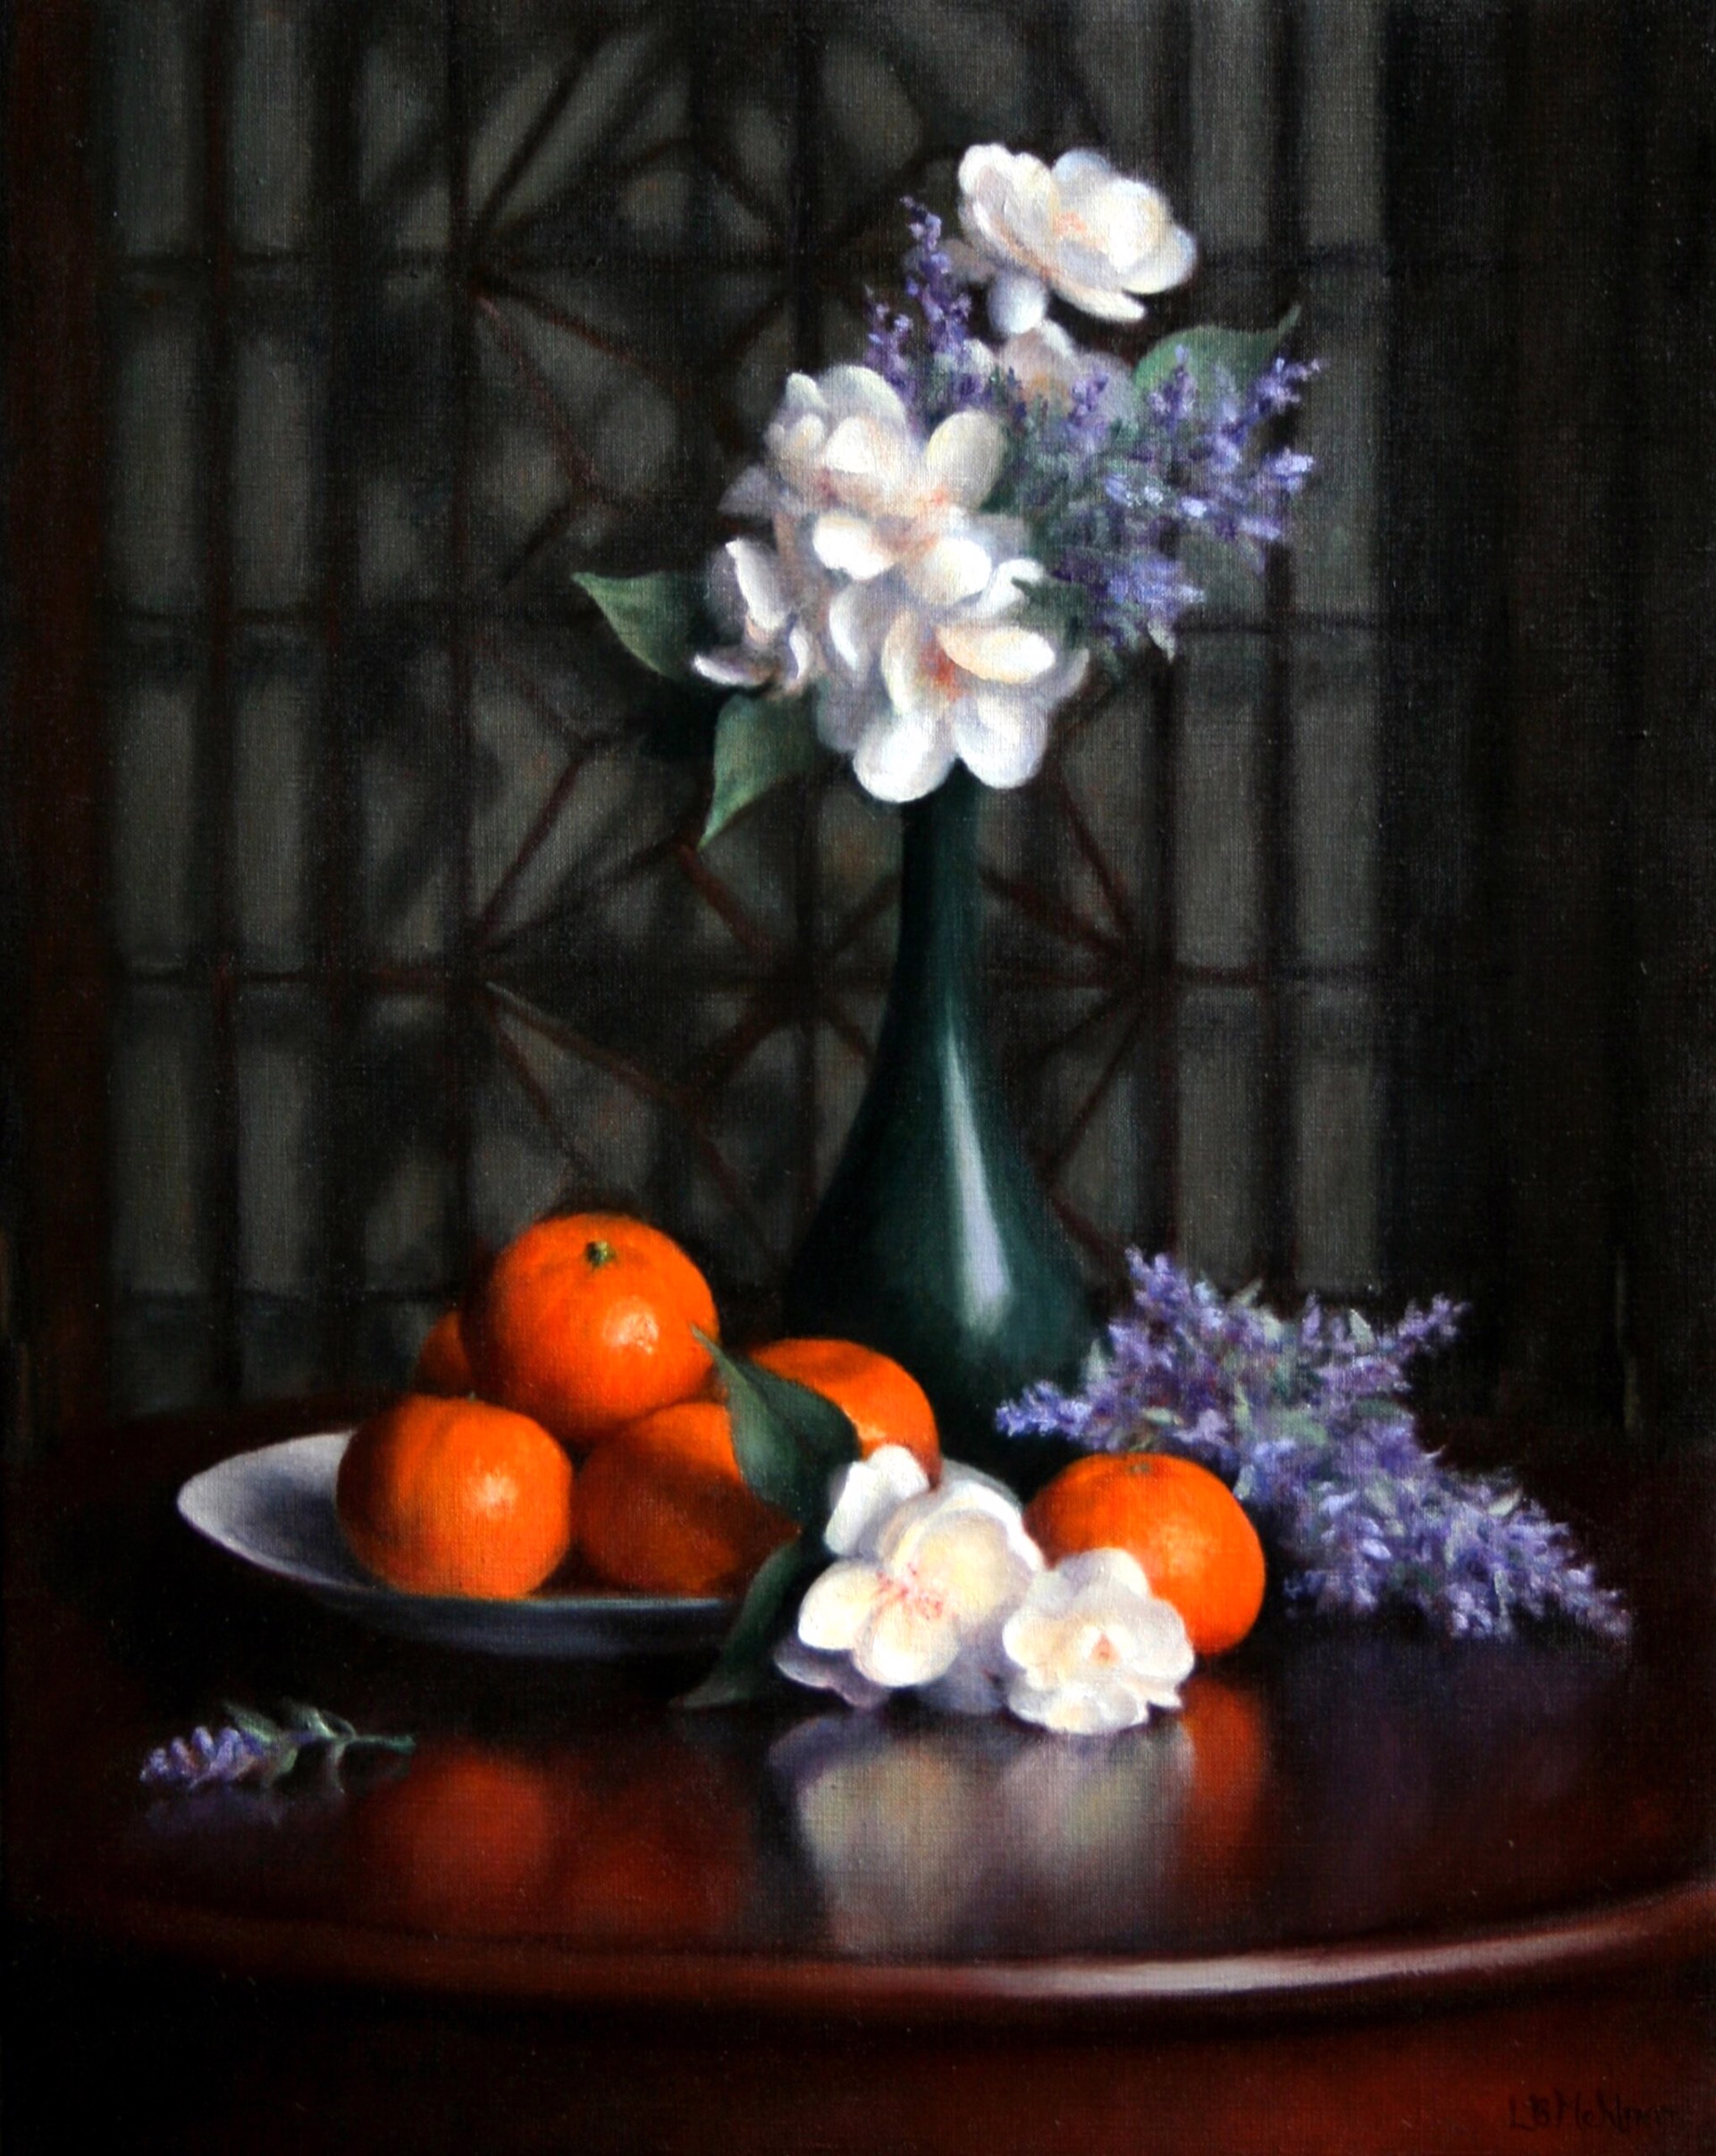 Lynne Mehlman "Mandarin Mood" by Oil Painters of America